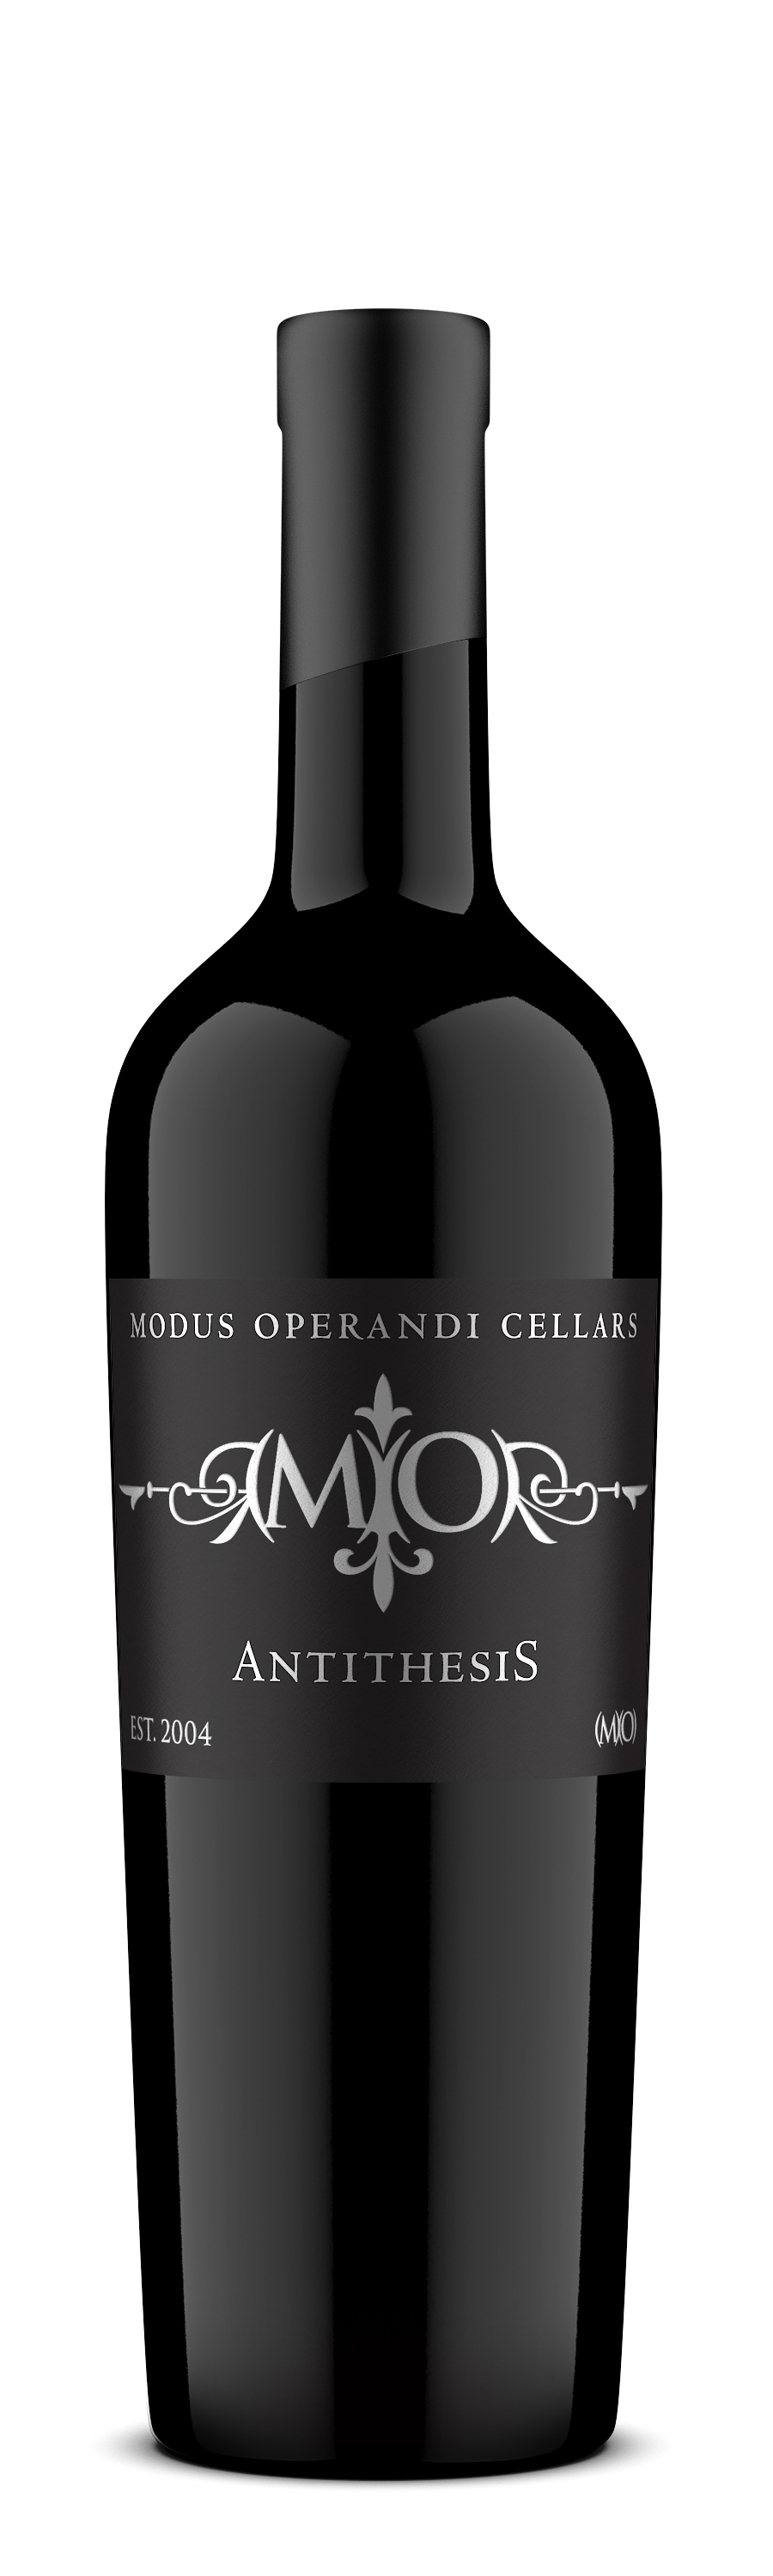 antithesis wine skiathos